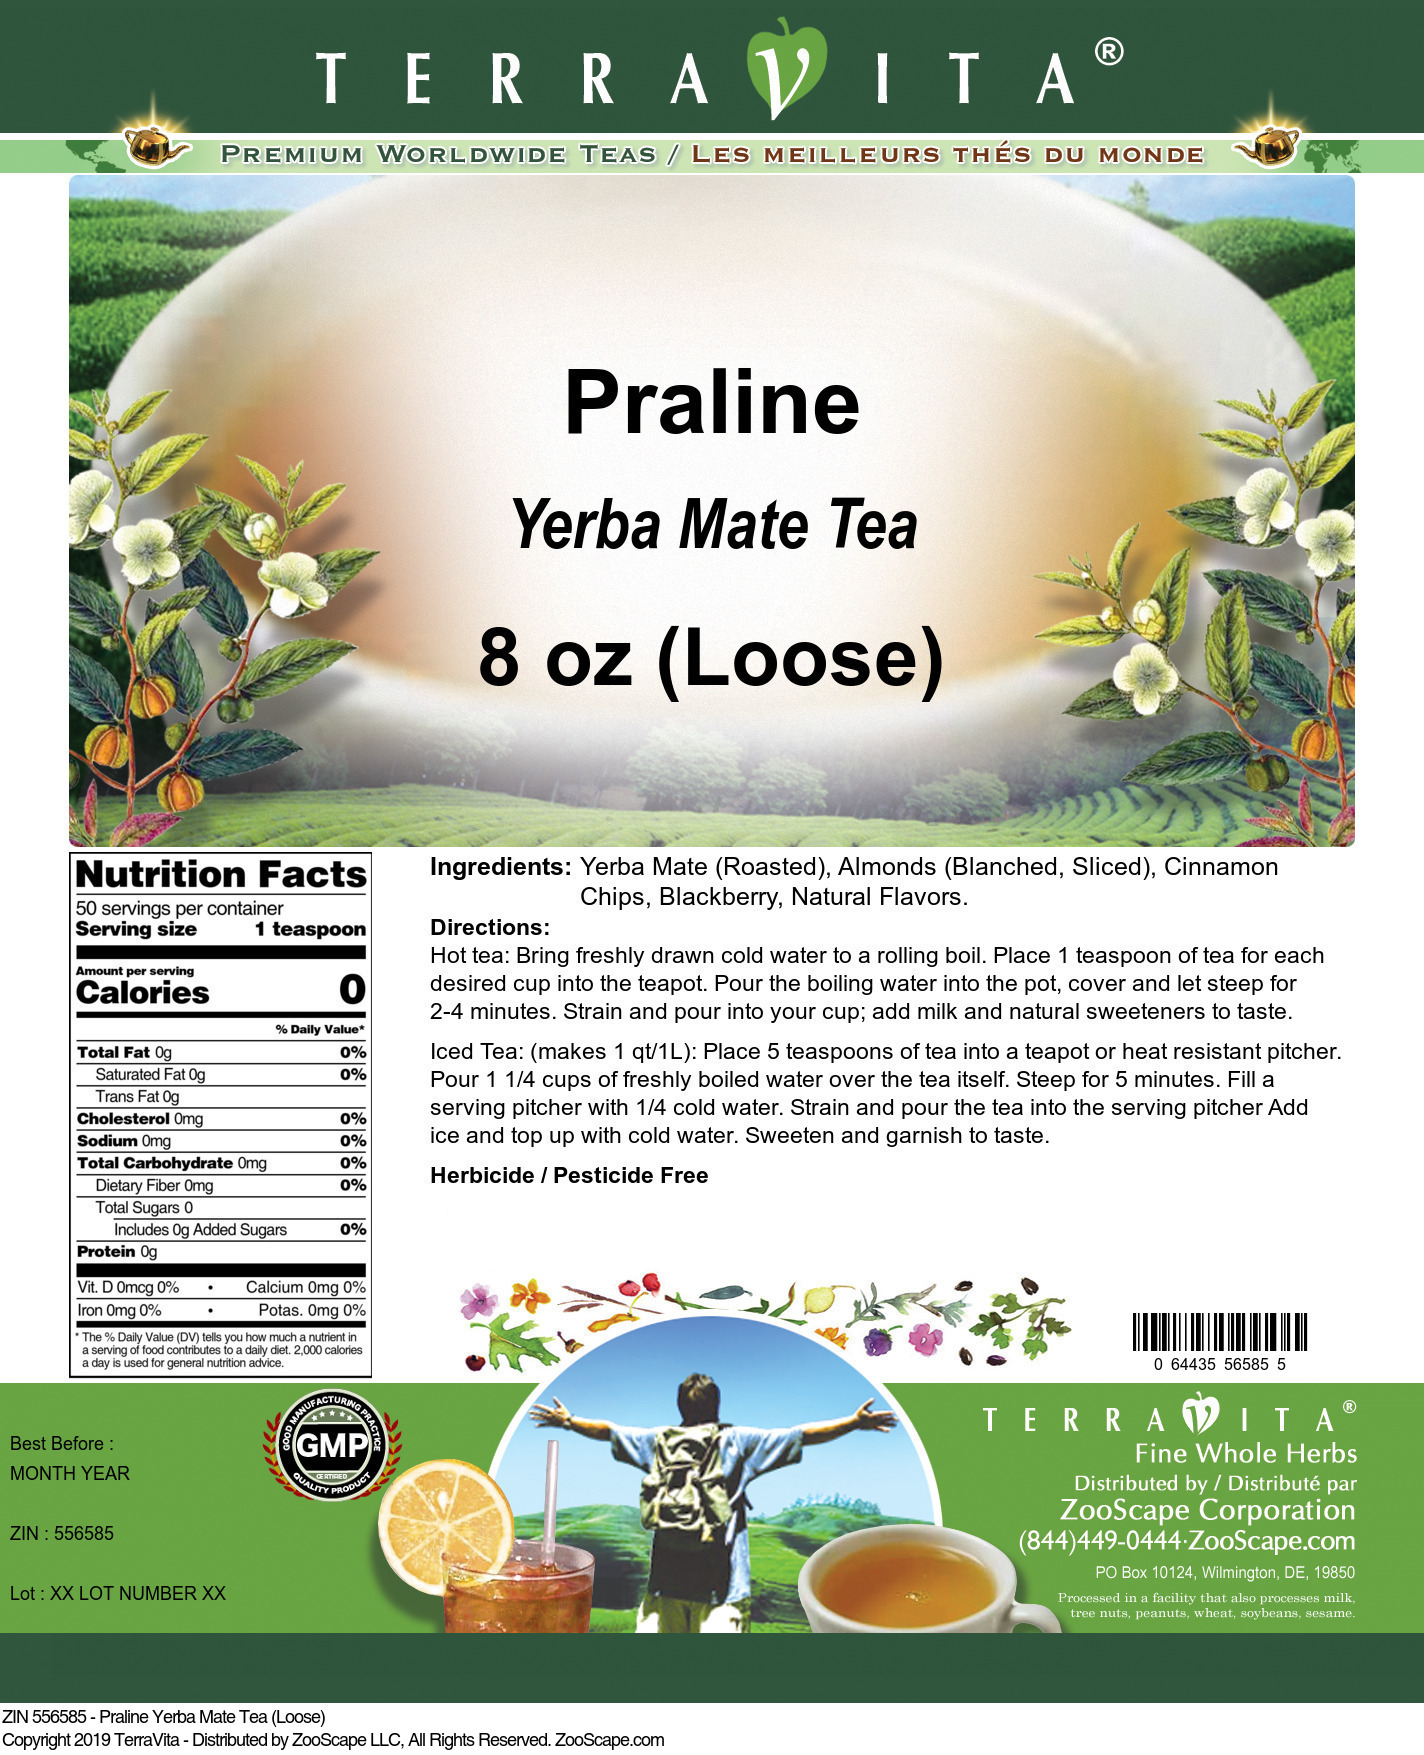 Praline Yerba Mate Tea (Loose) - Label